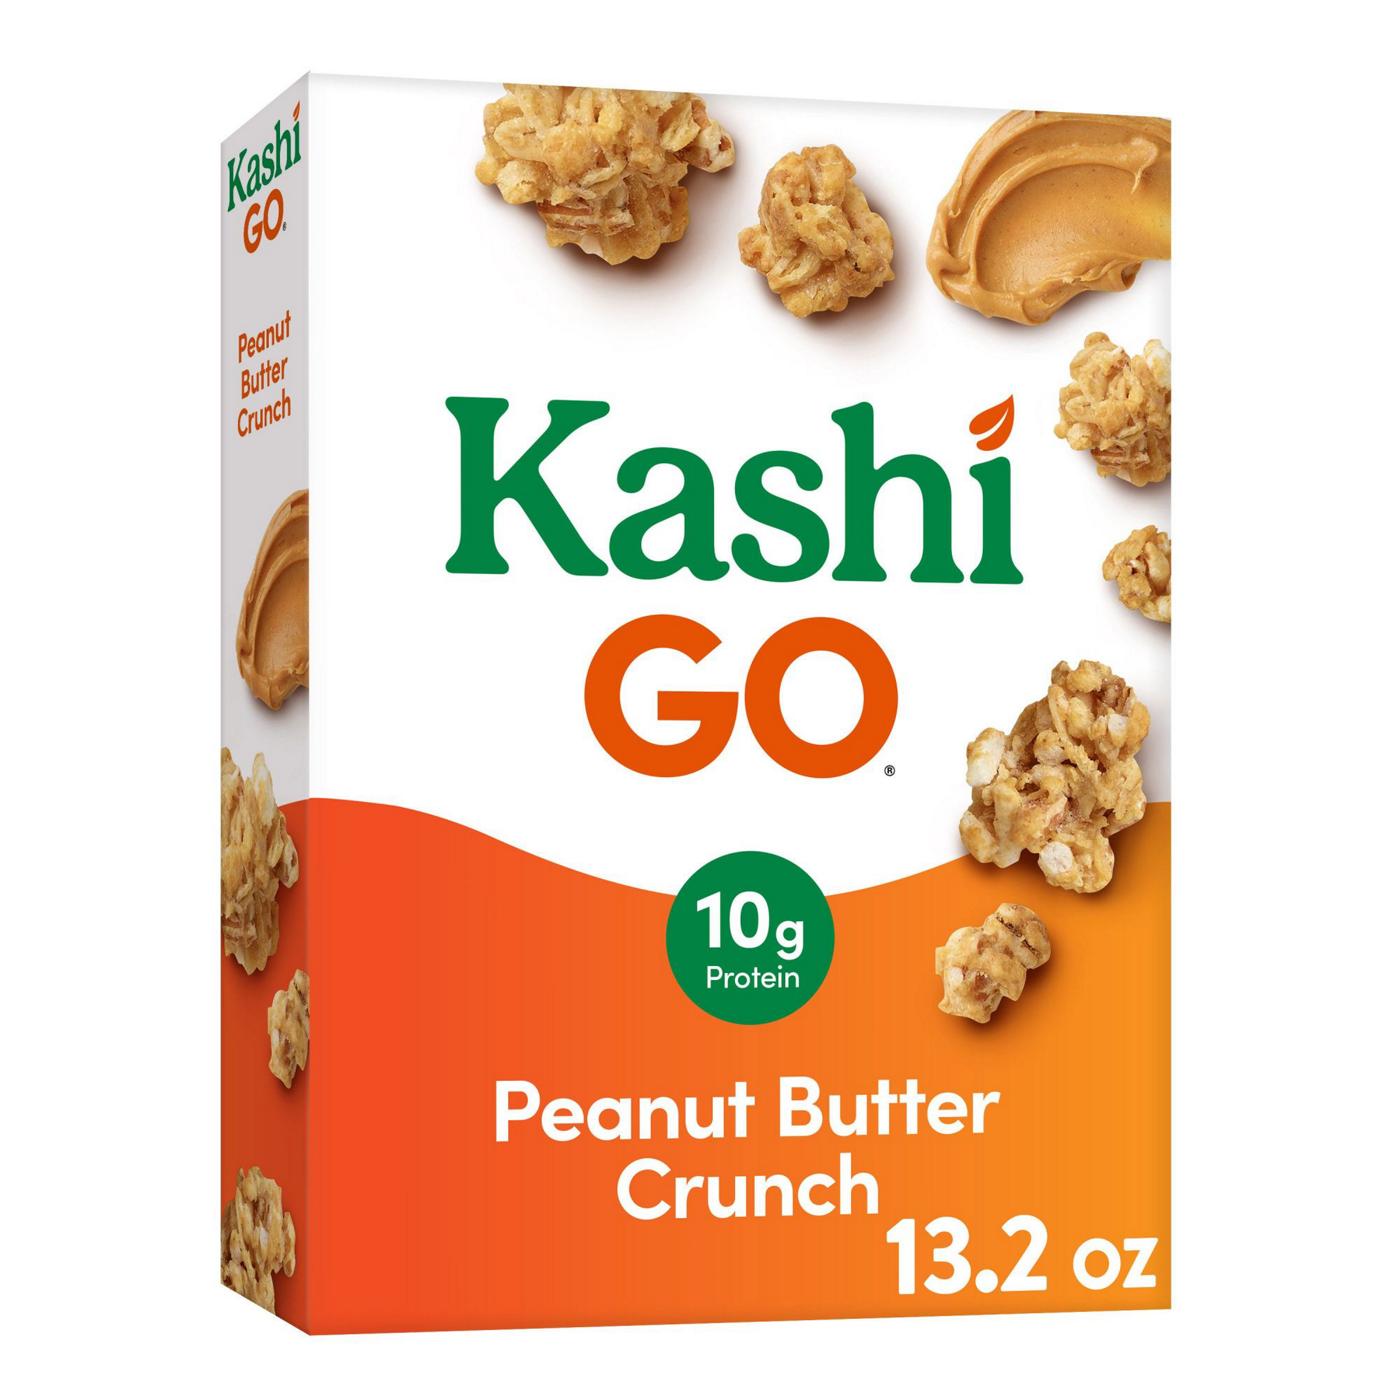 Kashi GO Peanut Butter Crunch Breakfast Cereal; image 1 of 11